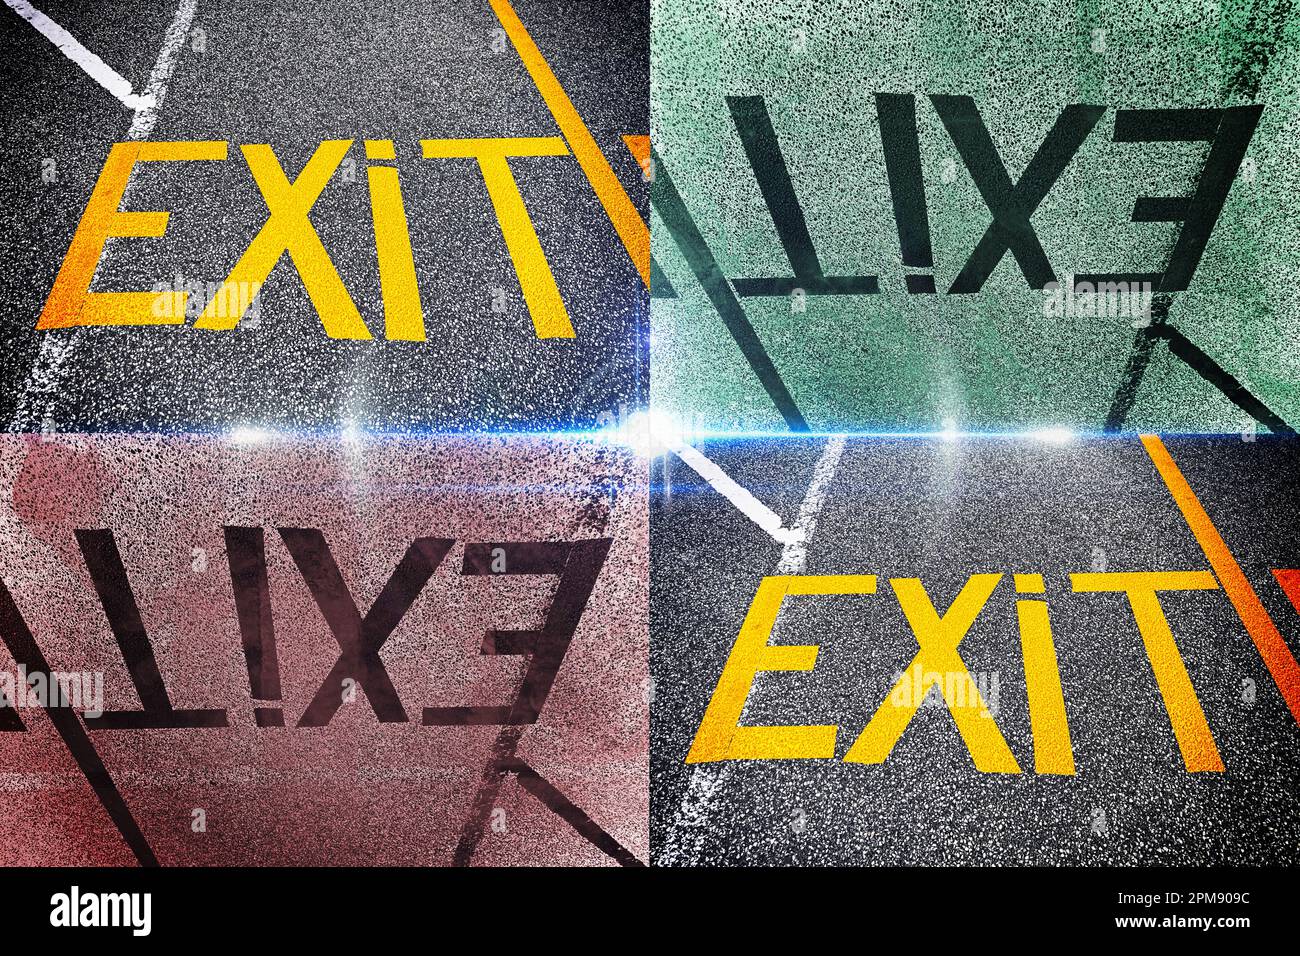 FOTOMONTAGE, Das Wort Exit ist auf dem Asphalt geschrieben Foto Stock